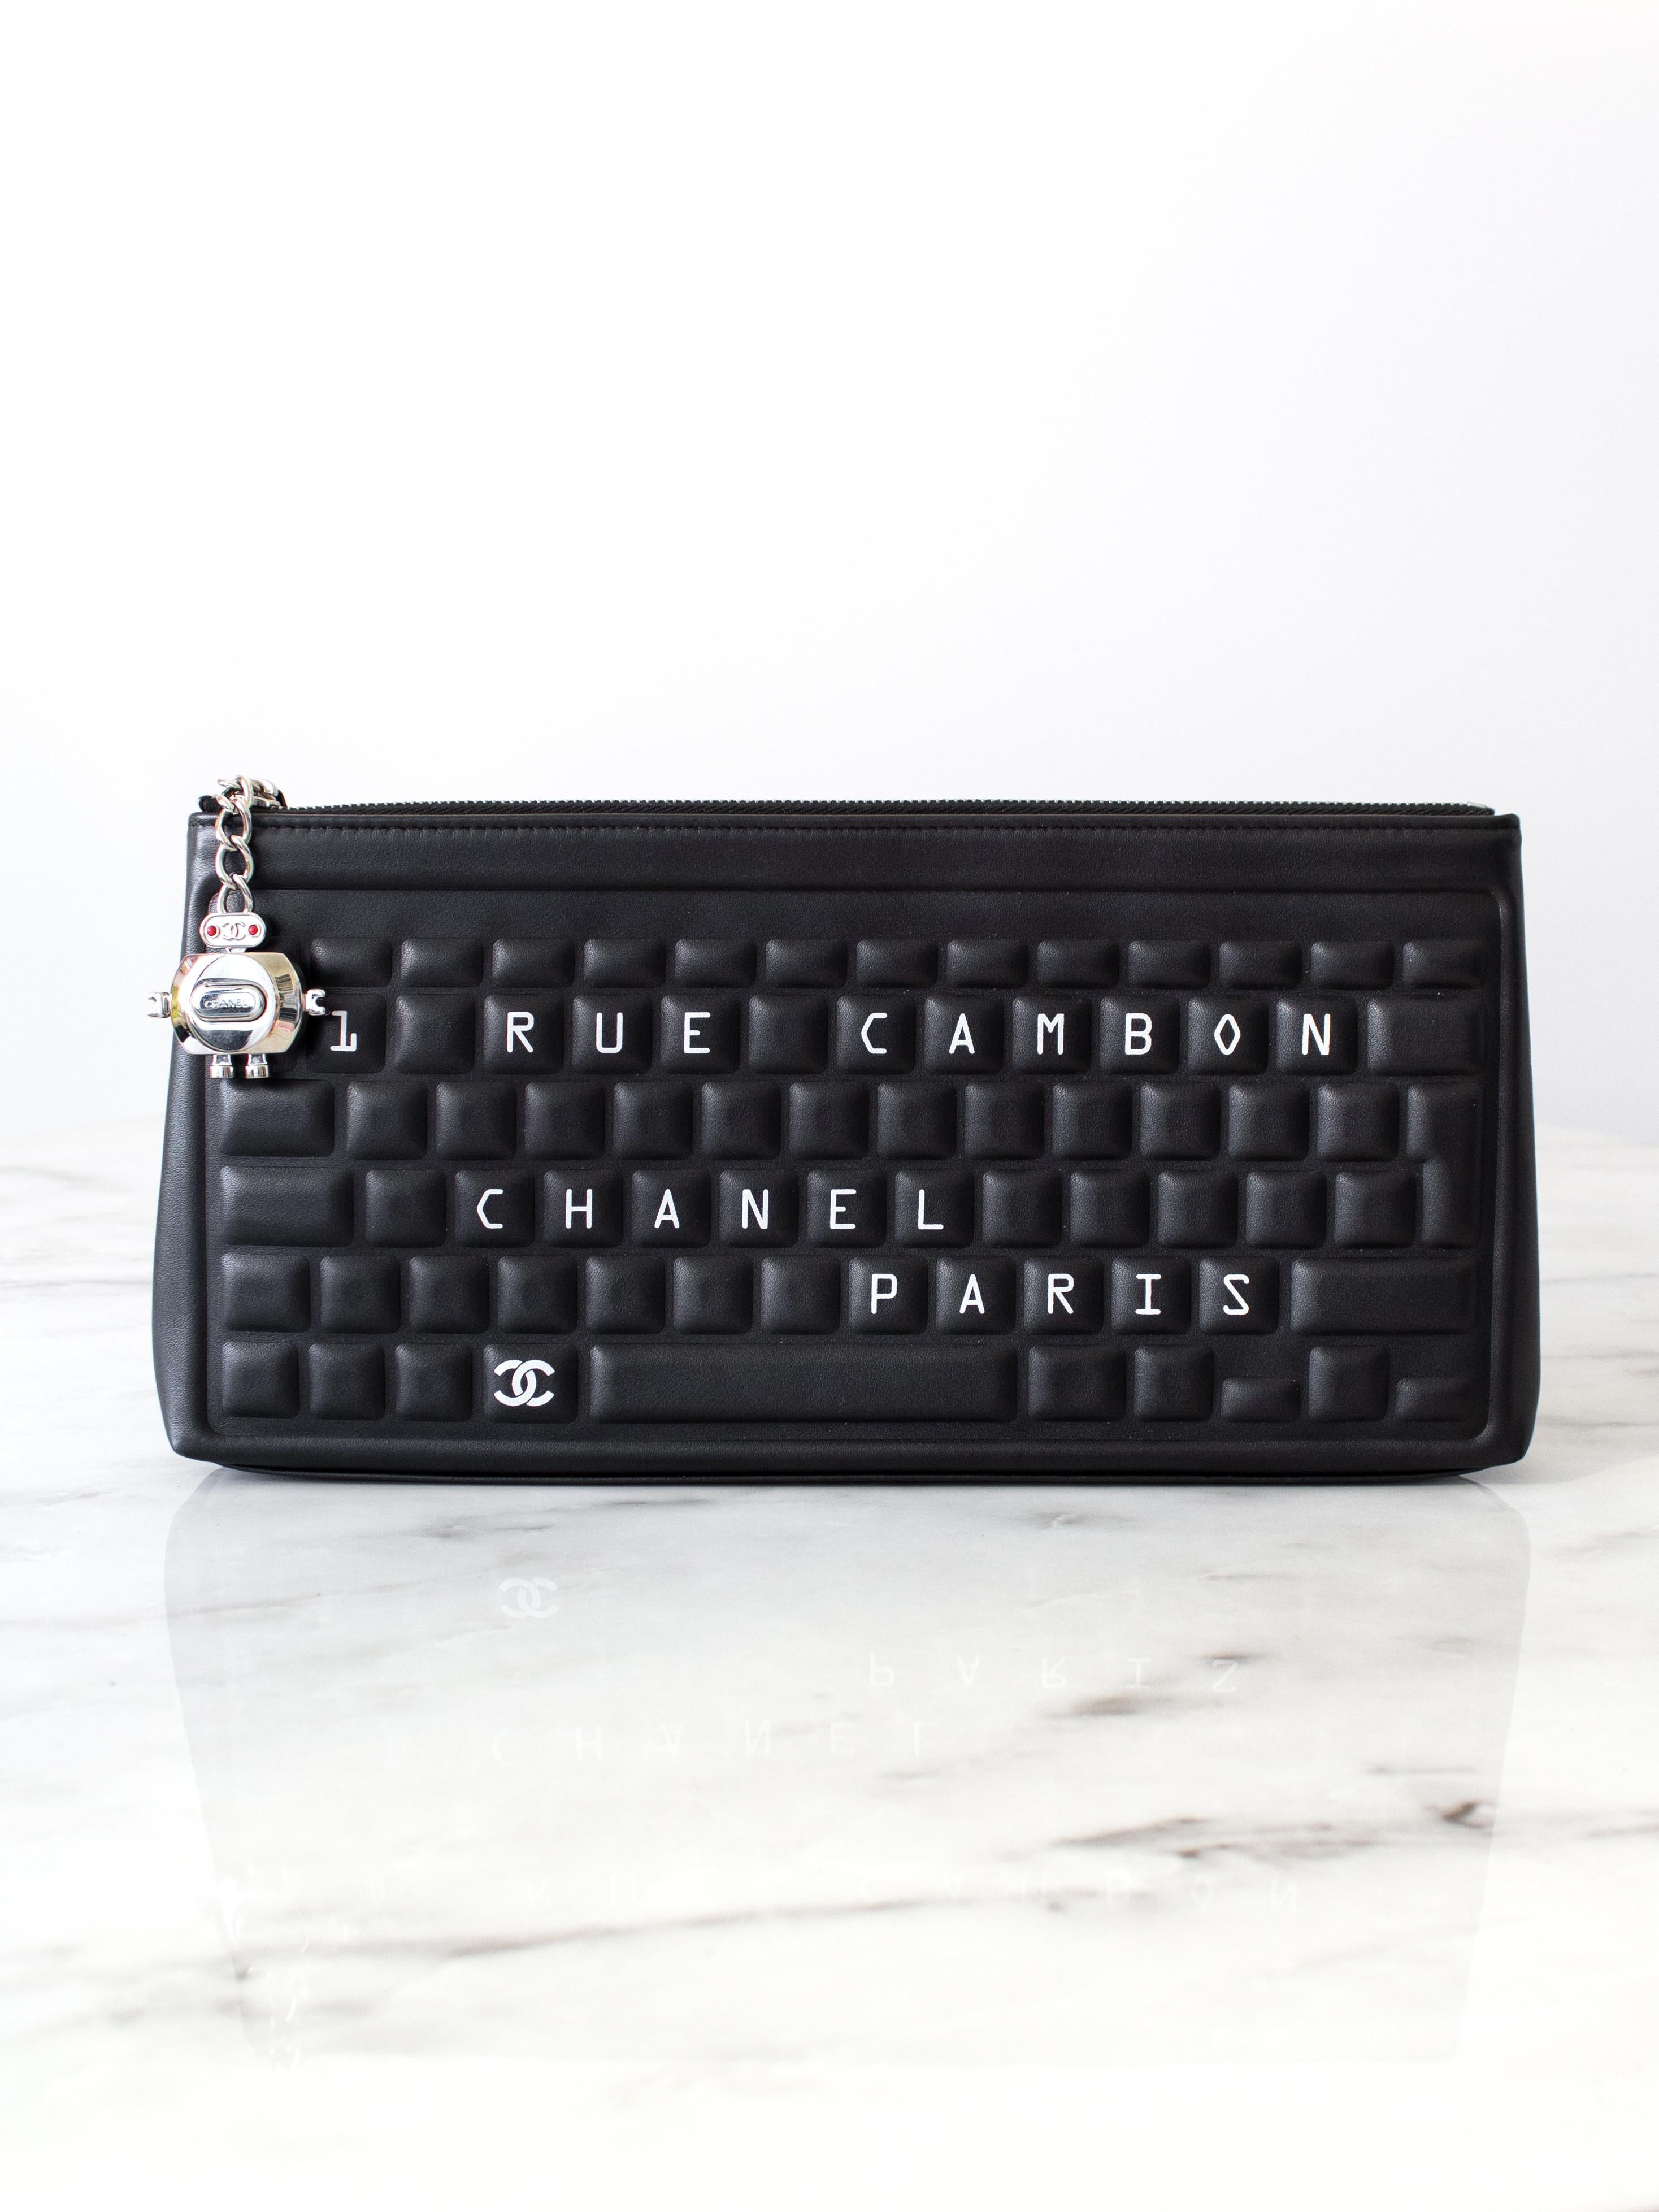 Die begehrteste Keyboard-Clutch aus der Chanel Data Center Collection Frühjahr/Sommer 2017 ist der Inbegriff von Technik und Mode. Diese elegante Clutch-Tasche ist ein Muss für jede technikbegeisterte Fashionista oder begeisterte Sammlerin. Sie ist